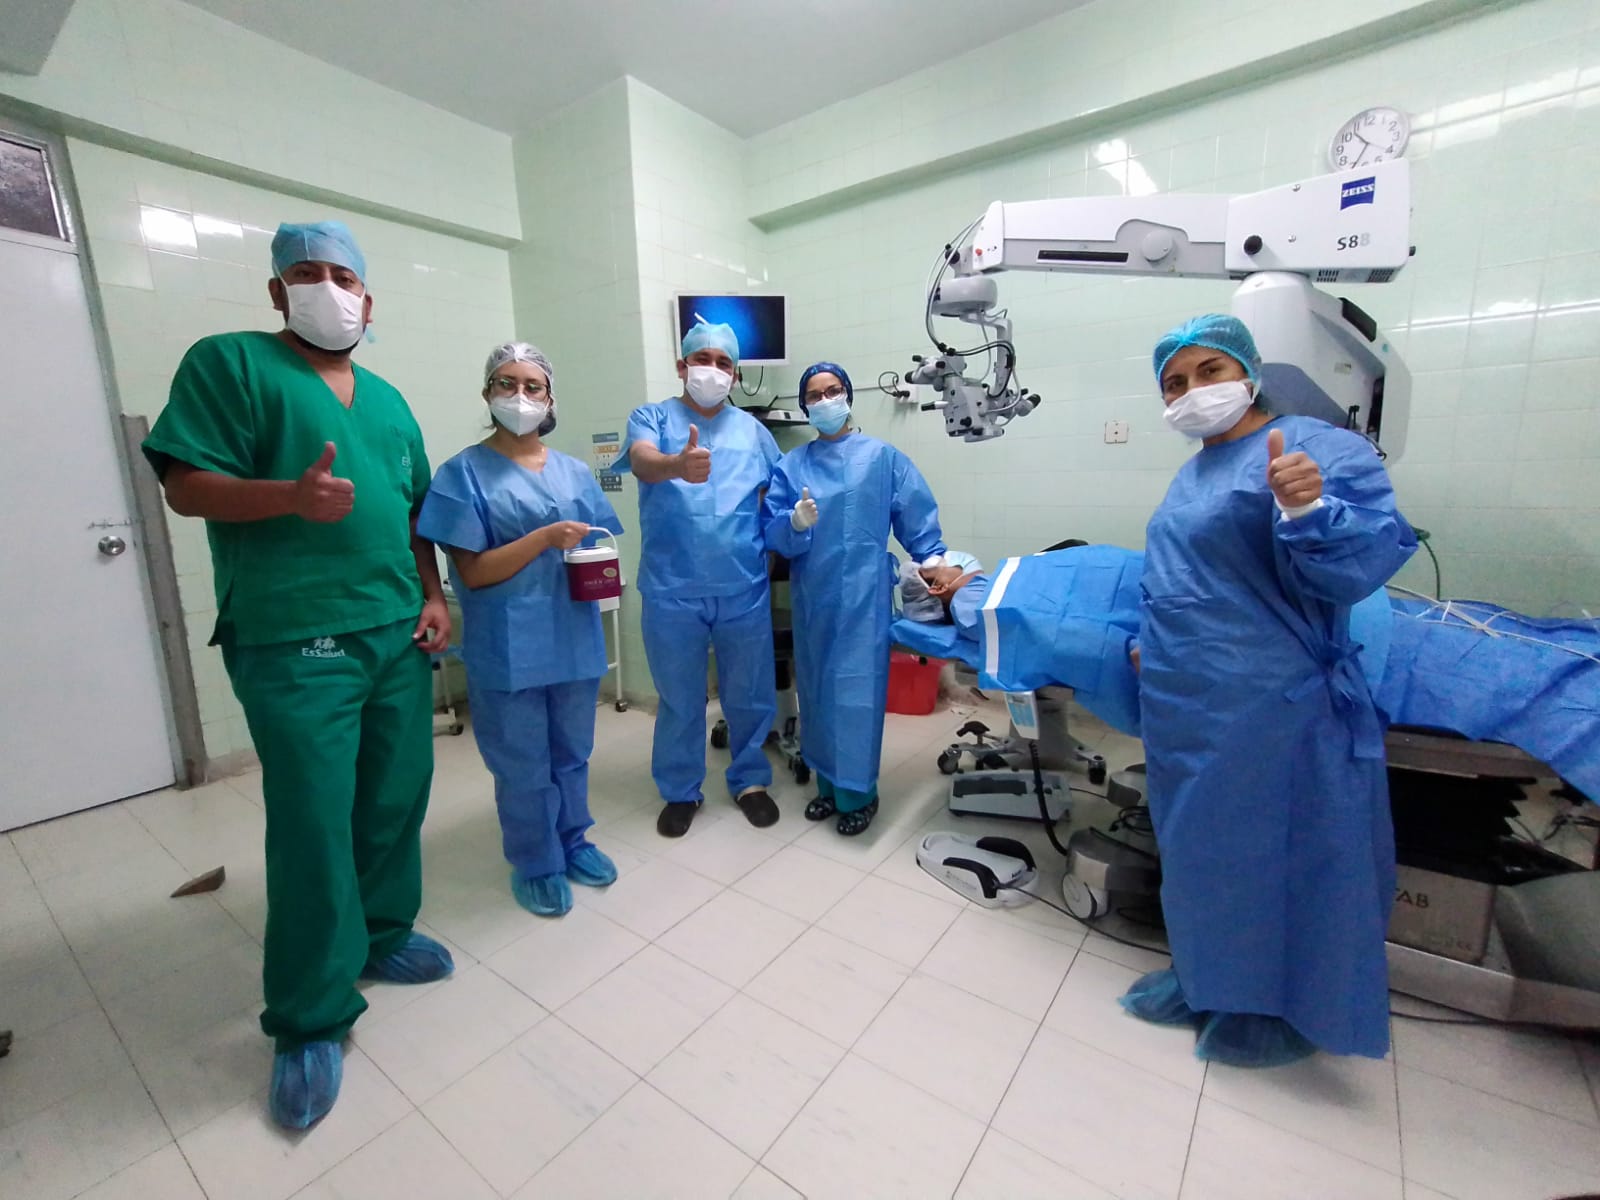 Essalud - EsSalud Piura: Instituto Peruano de Oftalmología realizó más de 17 trasplantes de córneas en lo que va del año